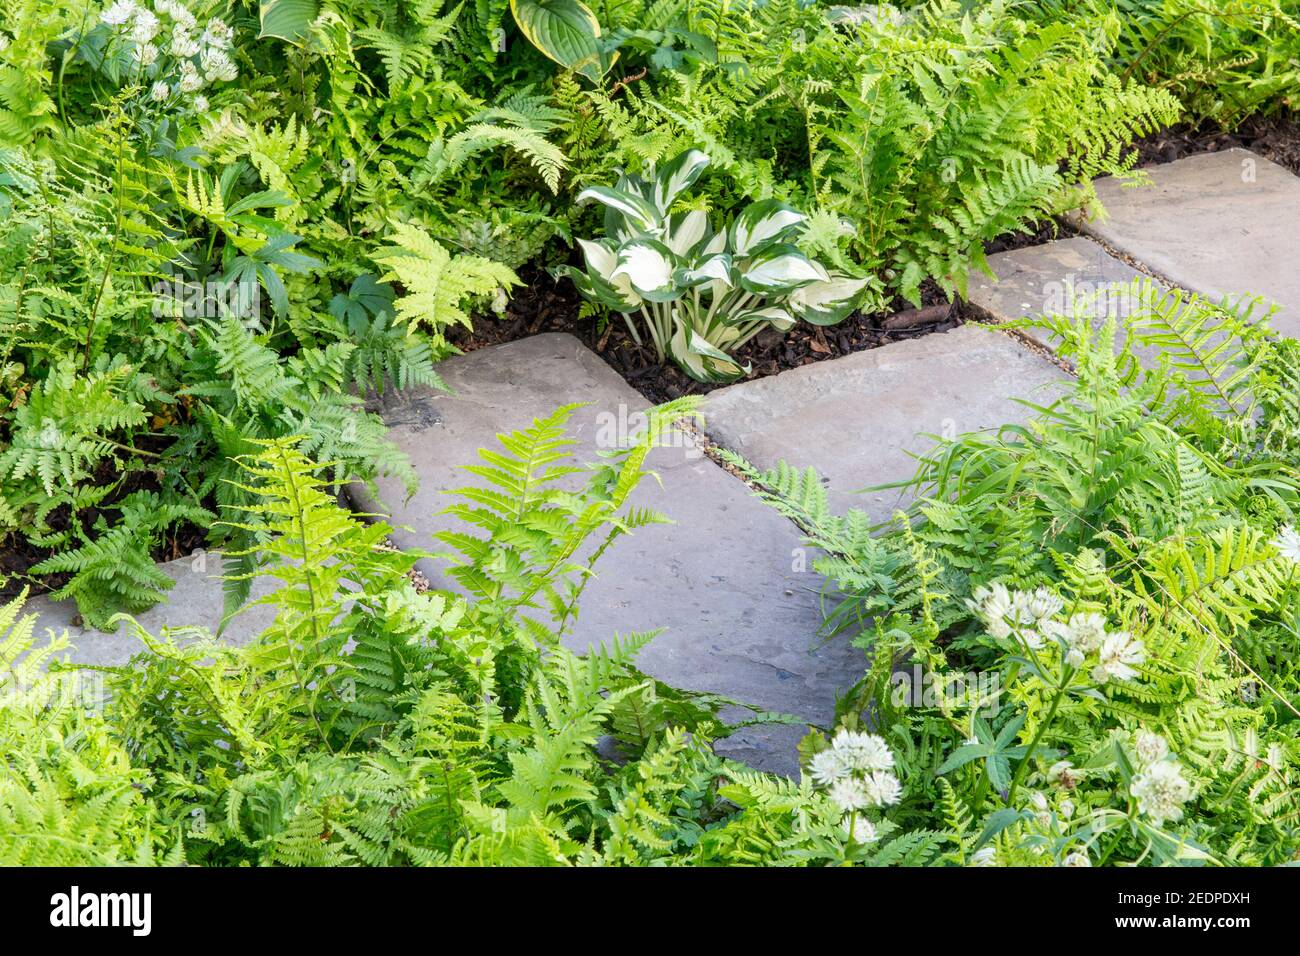 Ein englischer schattiger Vorgarten Steinplatten Pflasterweg mit Pflanzen von Hosta und Farnen in einem grünen Pflanzschema Farben England GB UK Stockfoto